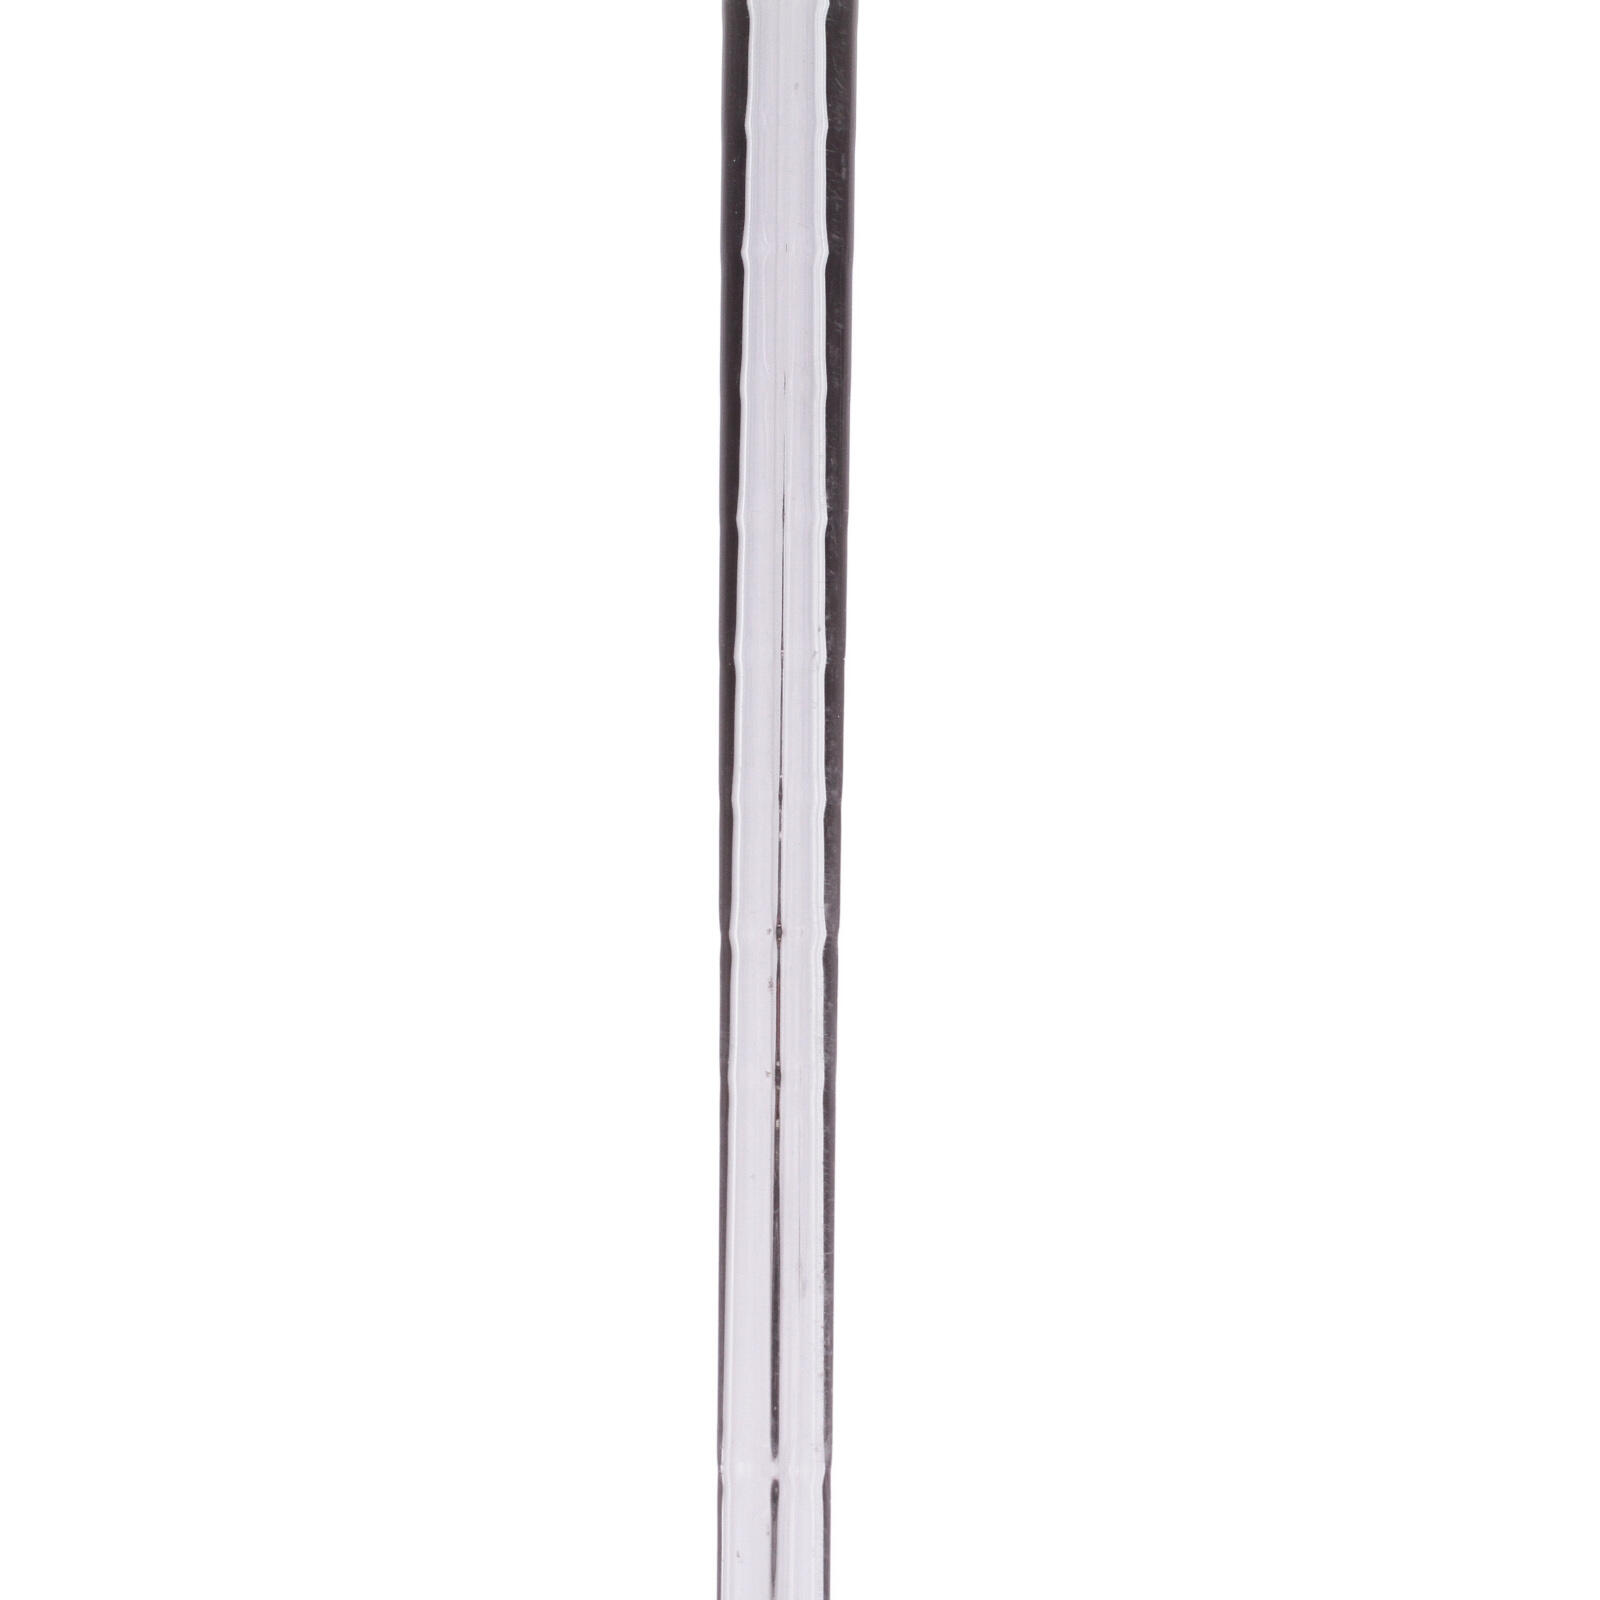 USED - 6 Iron Ping G2 Steel Shaft Regular Flex Right Handed - GRADE C 4/5